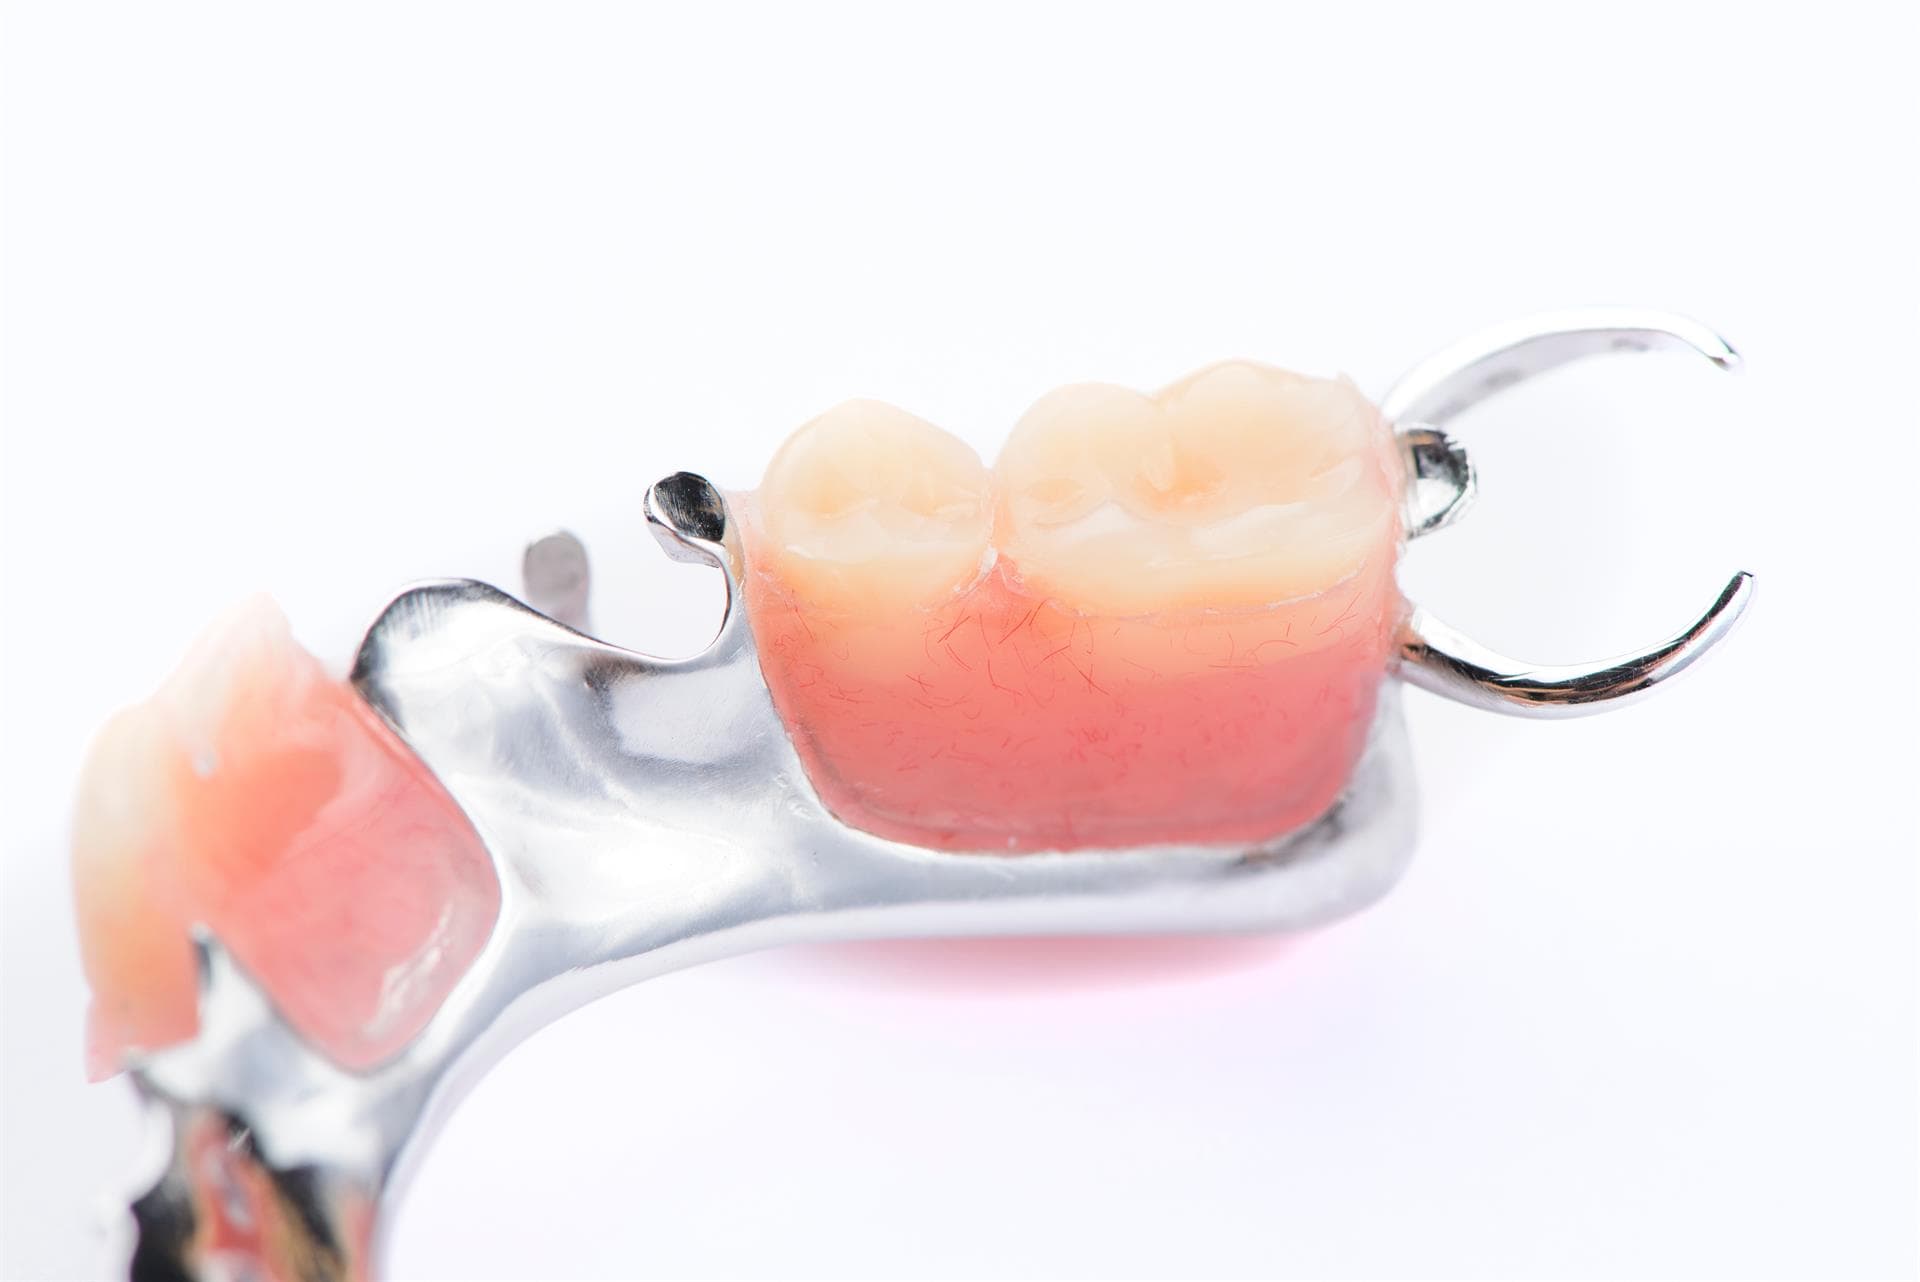  Colocación de prótesis dentales removibles